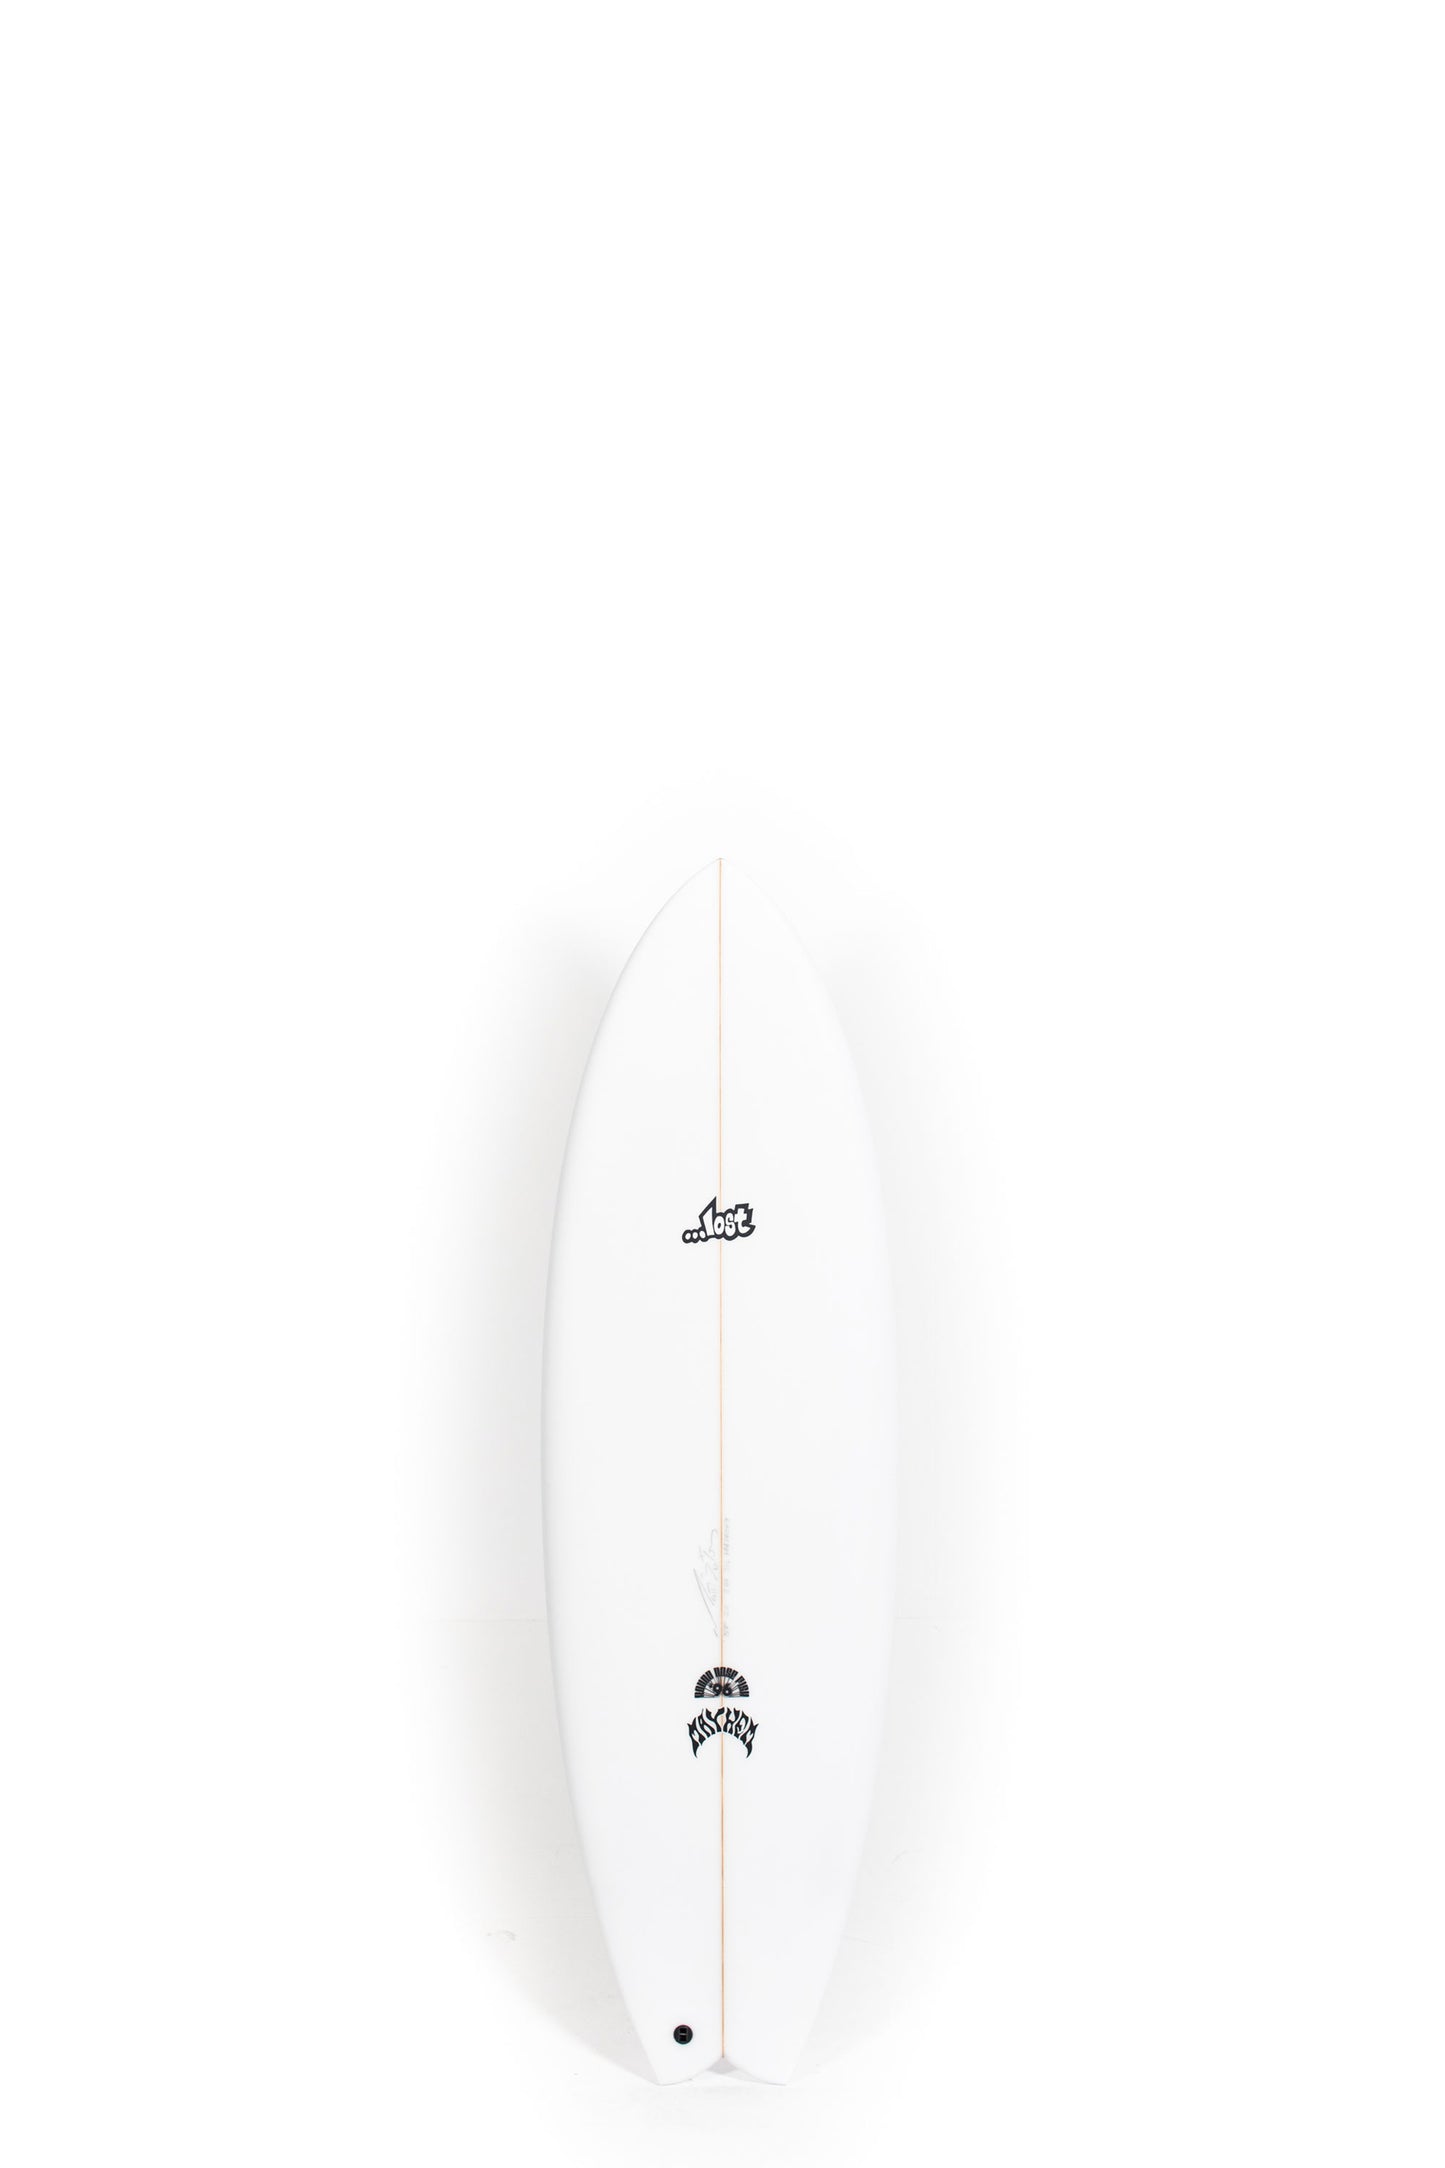 Pukas Surf Shop - Lost Surfboard - RNF '96 by Matt Biolos - 5'7"x 20" x 2.44 x 31L - MH18069